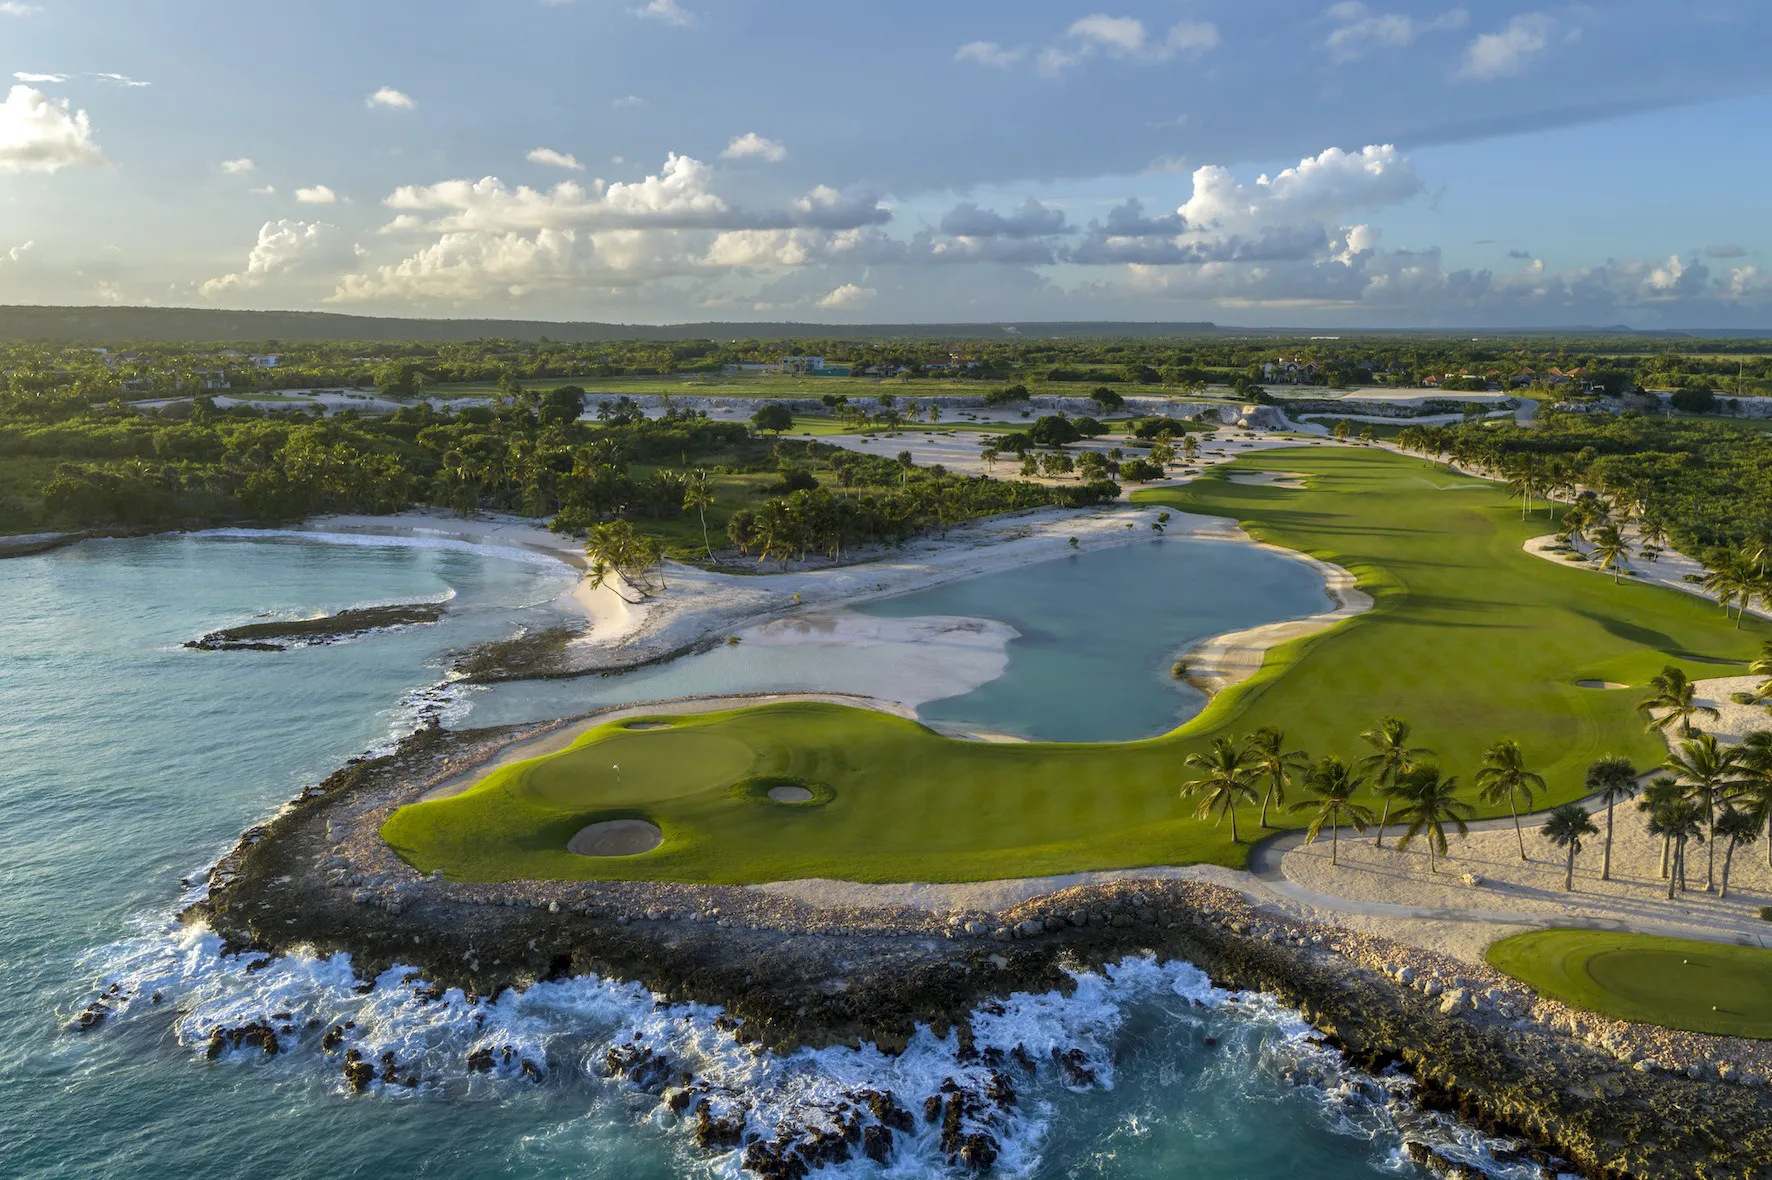 Punta Espada seleccionado número 1 del Caribe y México por la revista Golfweek